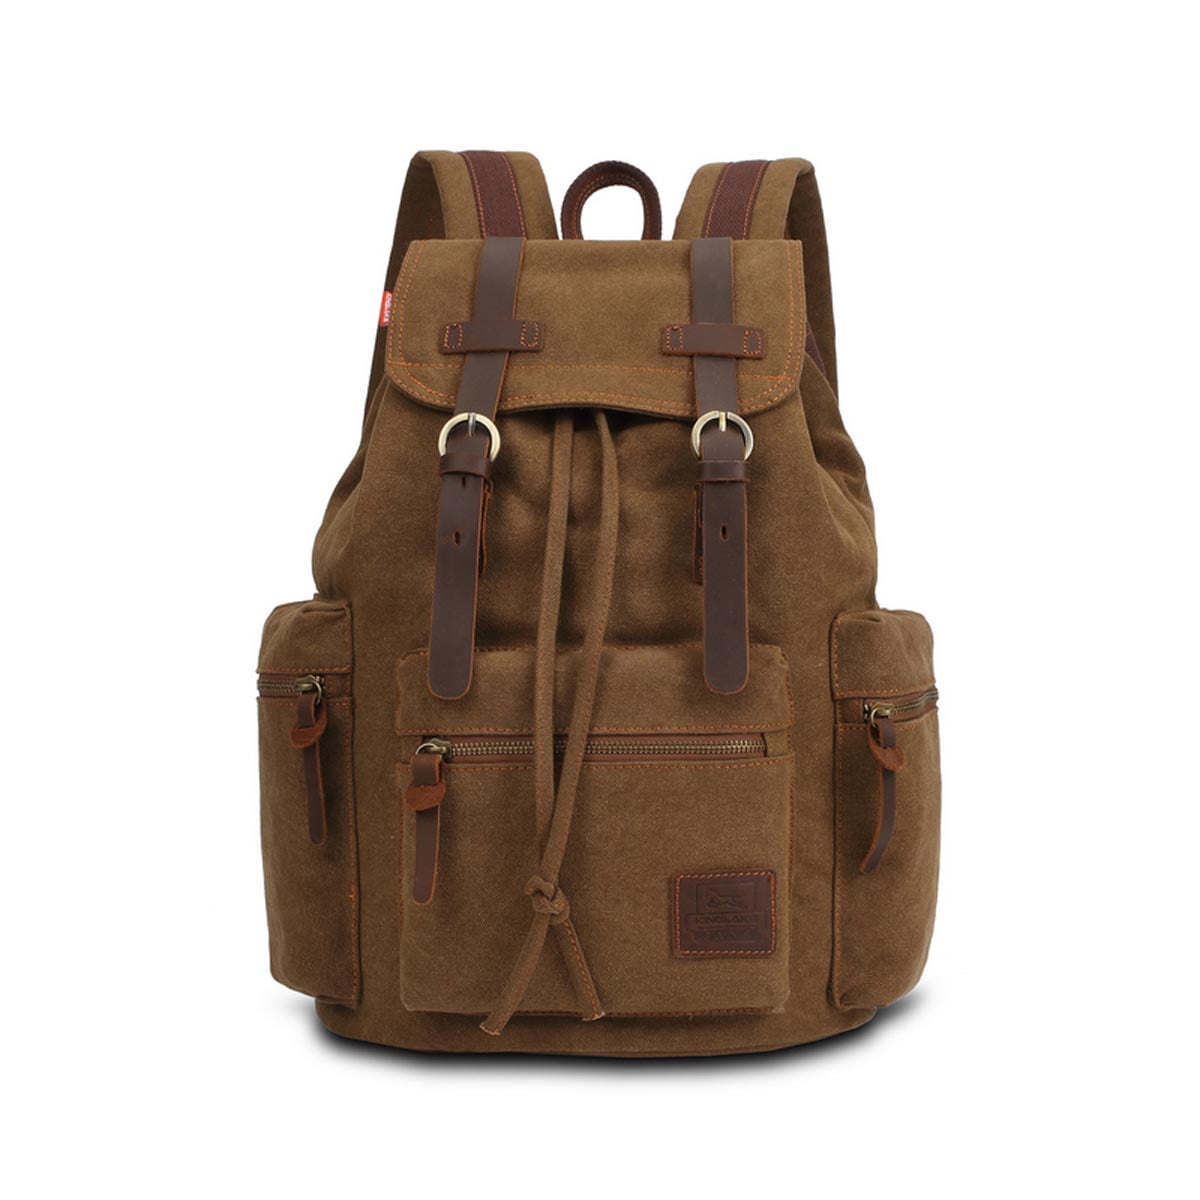 Unisex Vintage Travel Canvas Backpack Sport Rucksack Satchel School Hiking Bag 